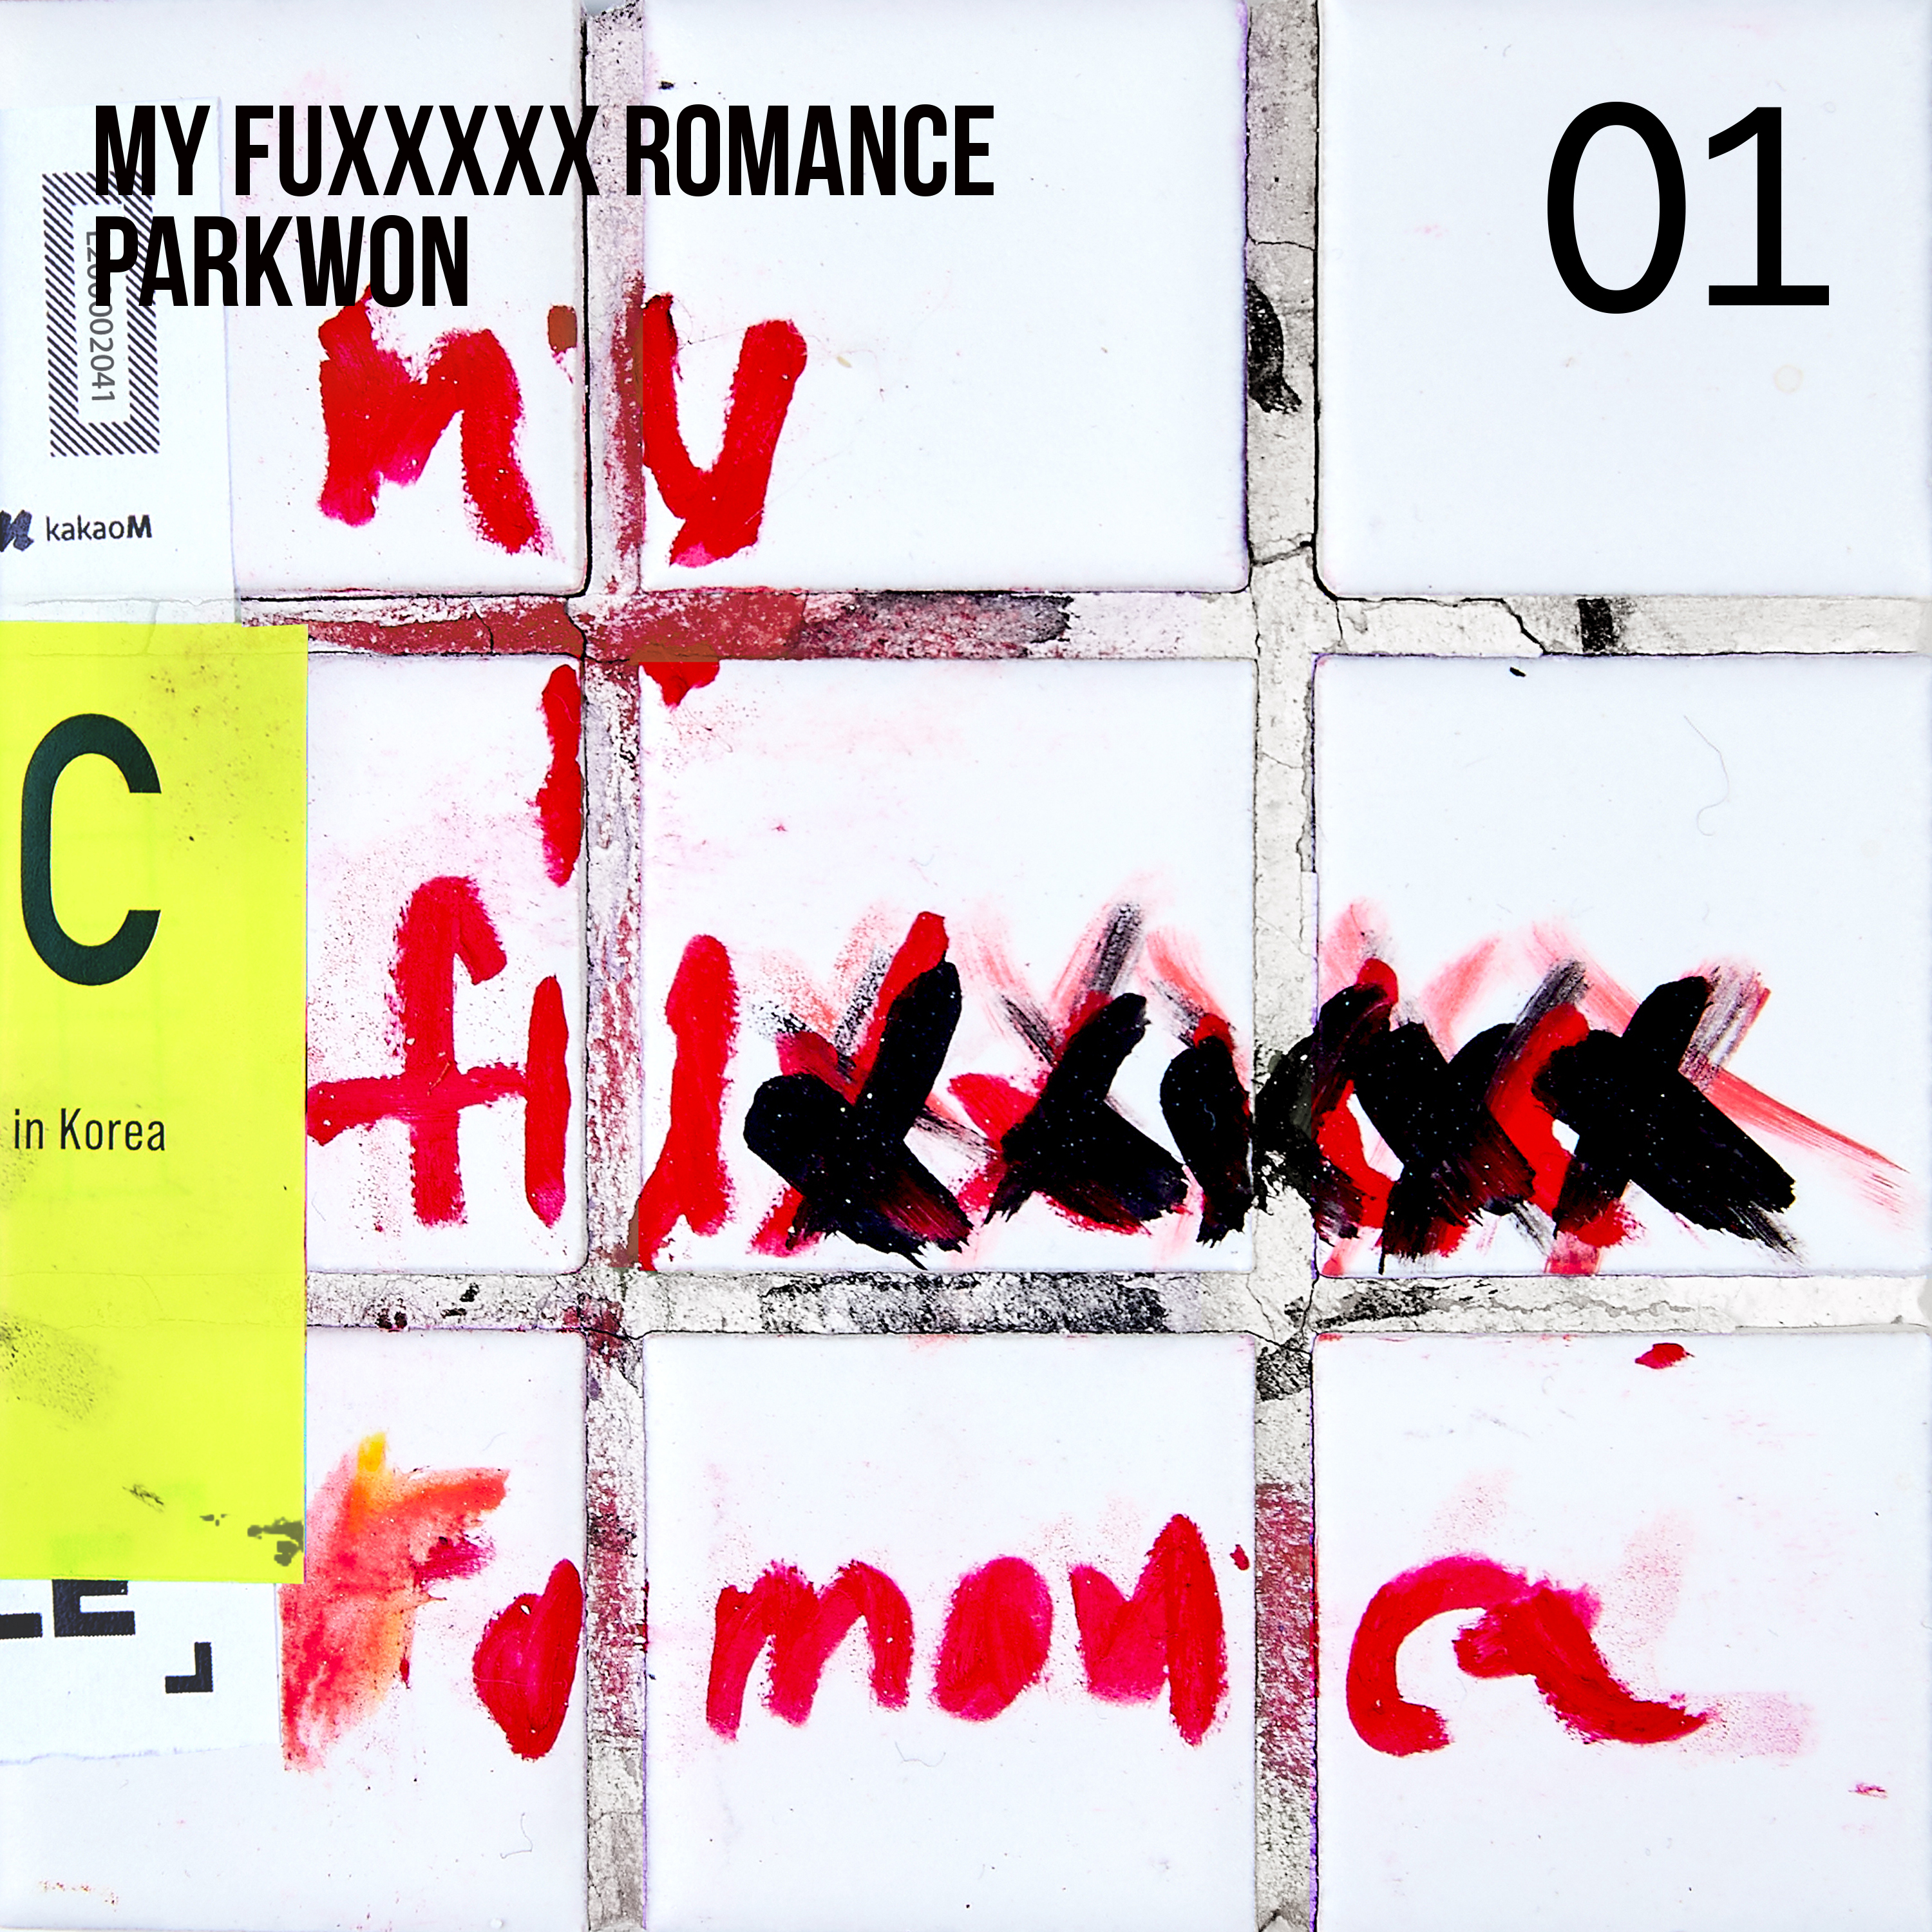 [影音] 朴元(Park Won) - My fuxxxxx romance 01